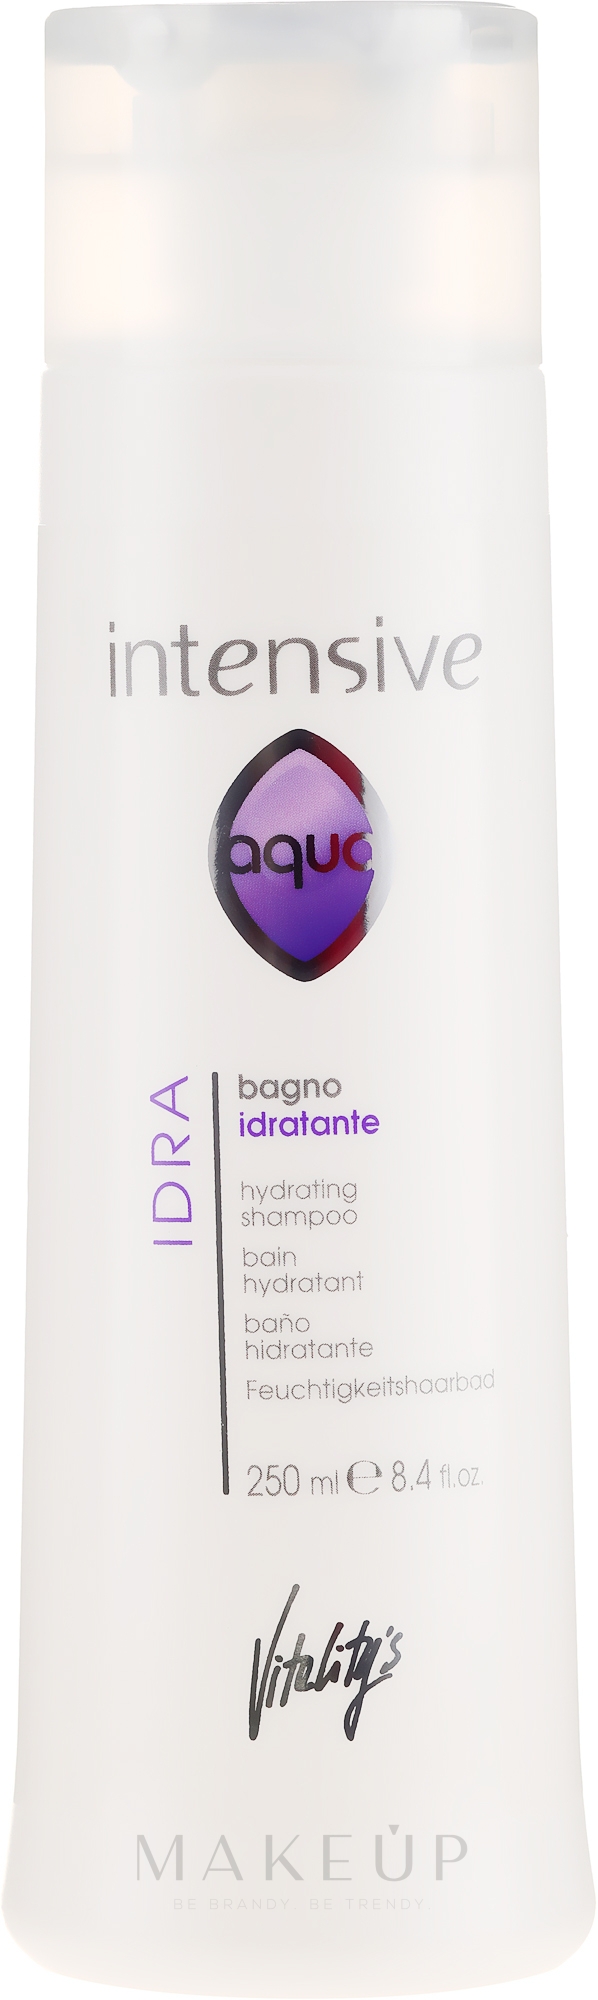 Feuchtigkeitsspendendes Shampoo - Vitality's Intensive Aqua Hydrating Shampoo — Bild 250 ml